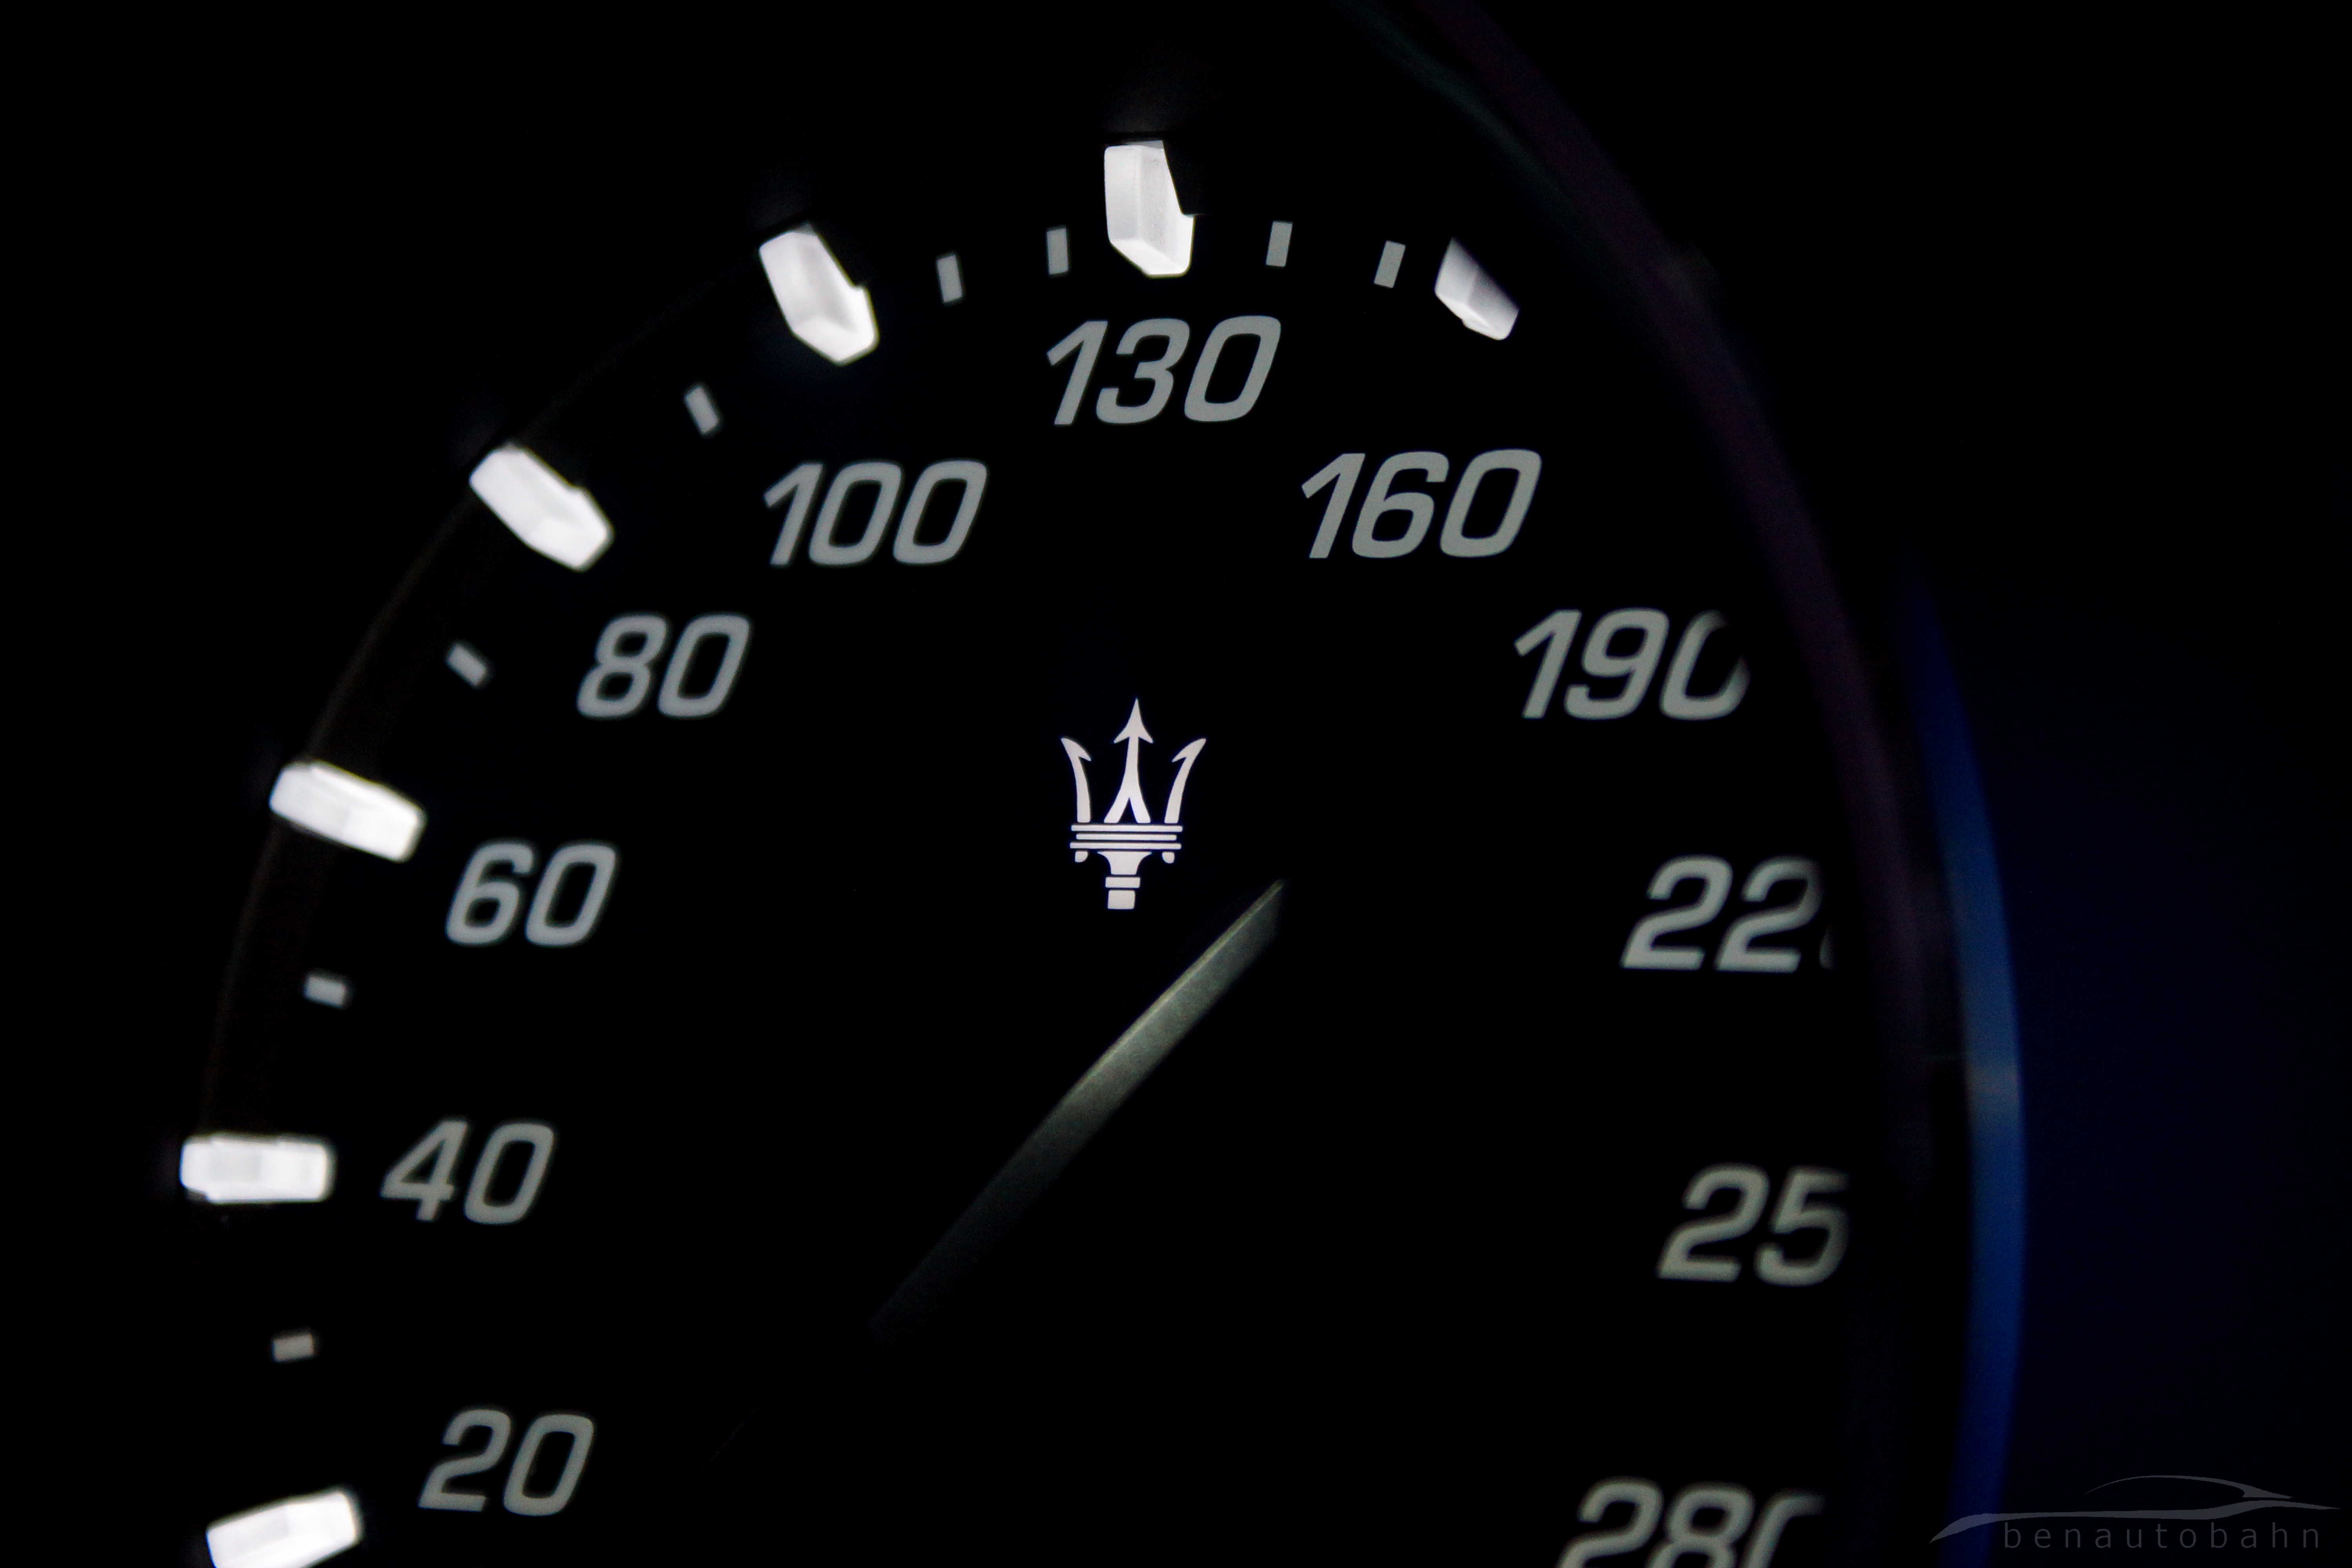 Maserati Quattroporte launch event